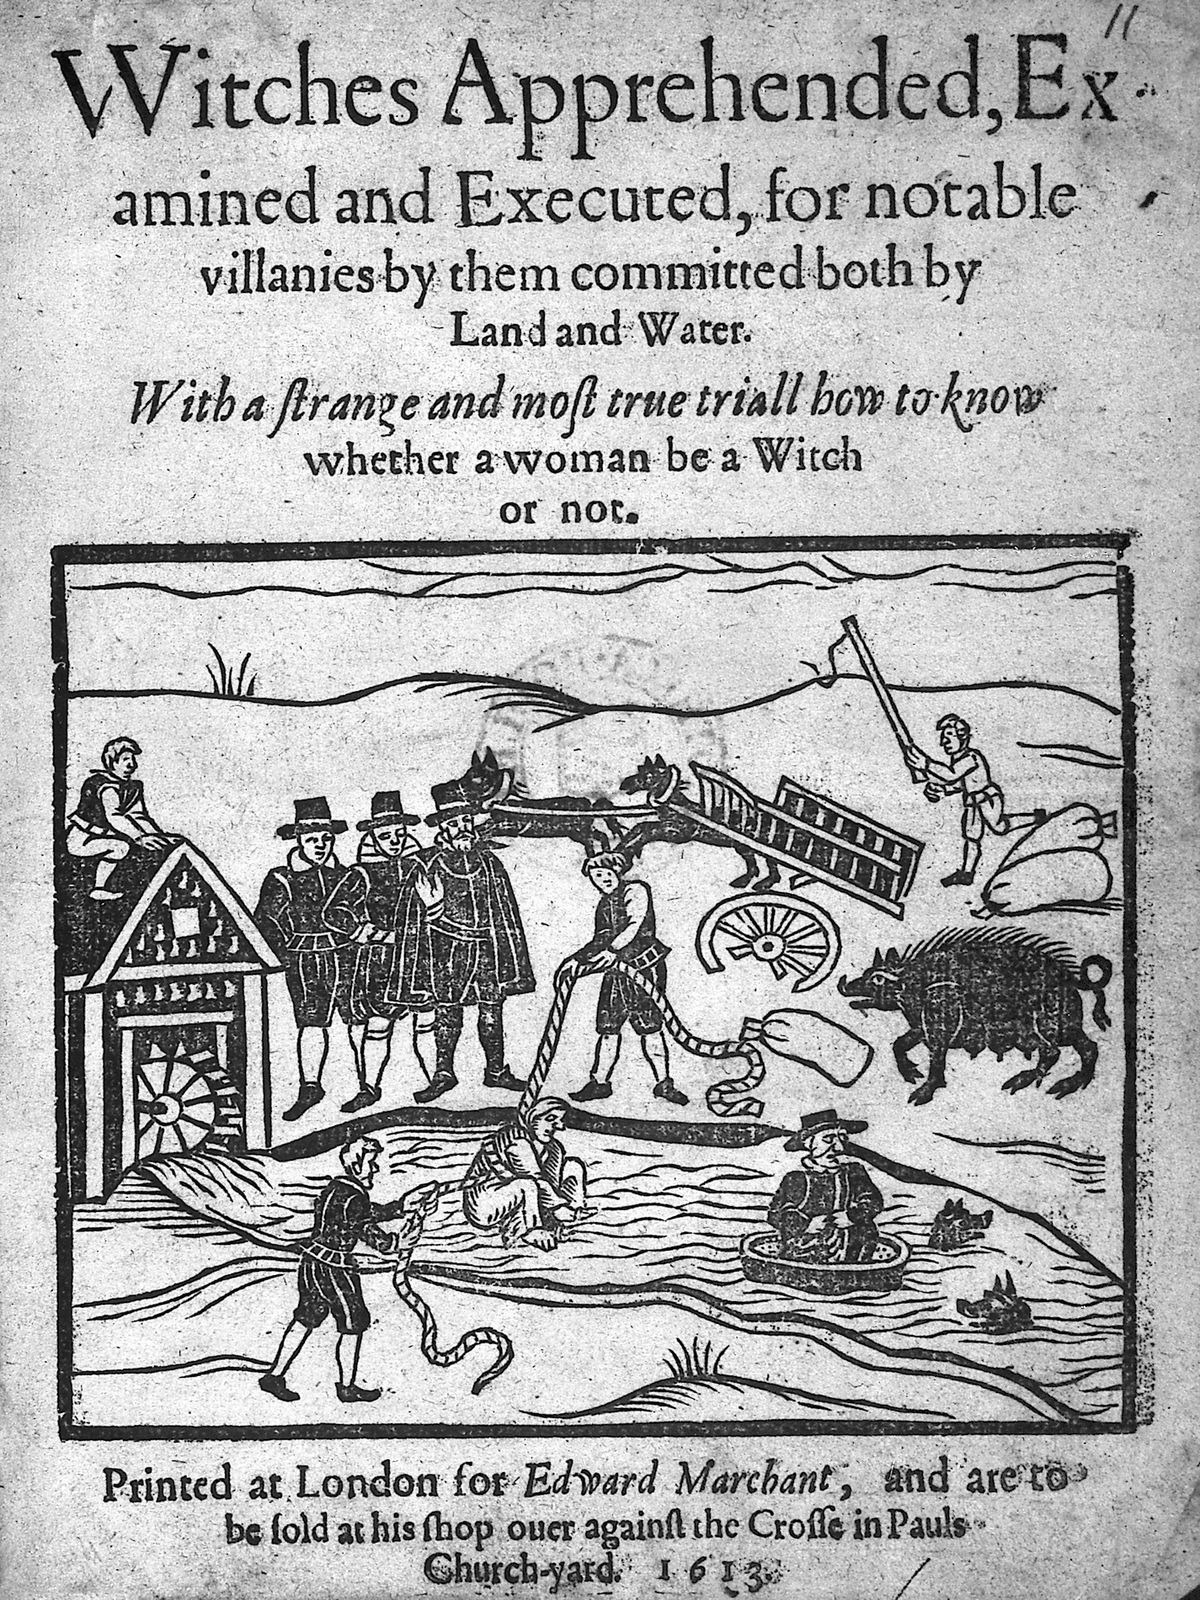 Raamatu "Witches apprehended" tiitelleht, mis kujutab nõidade veekatset. 1613